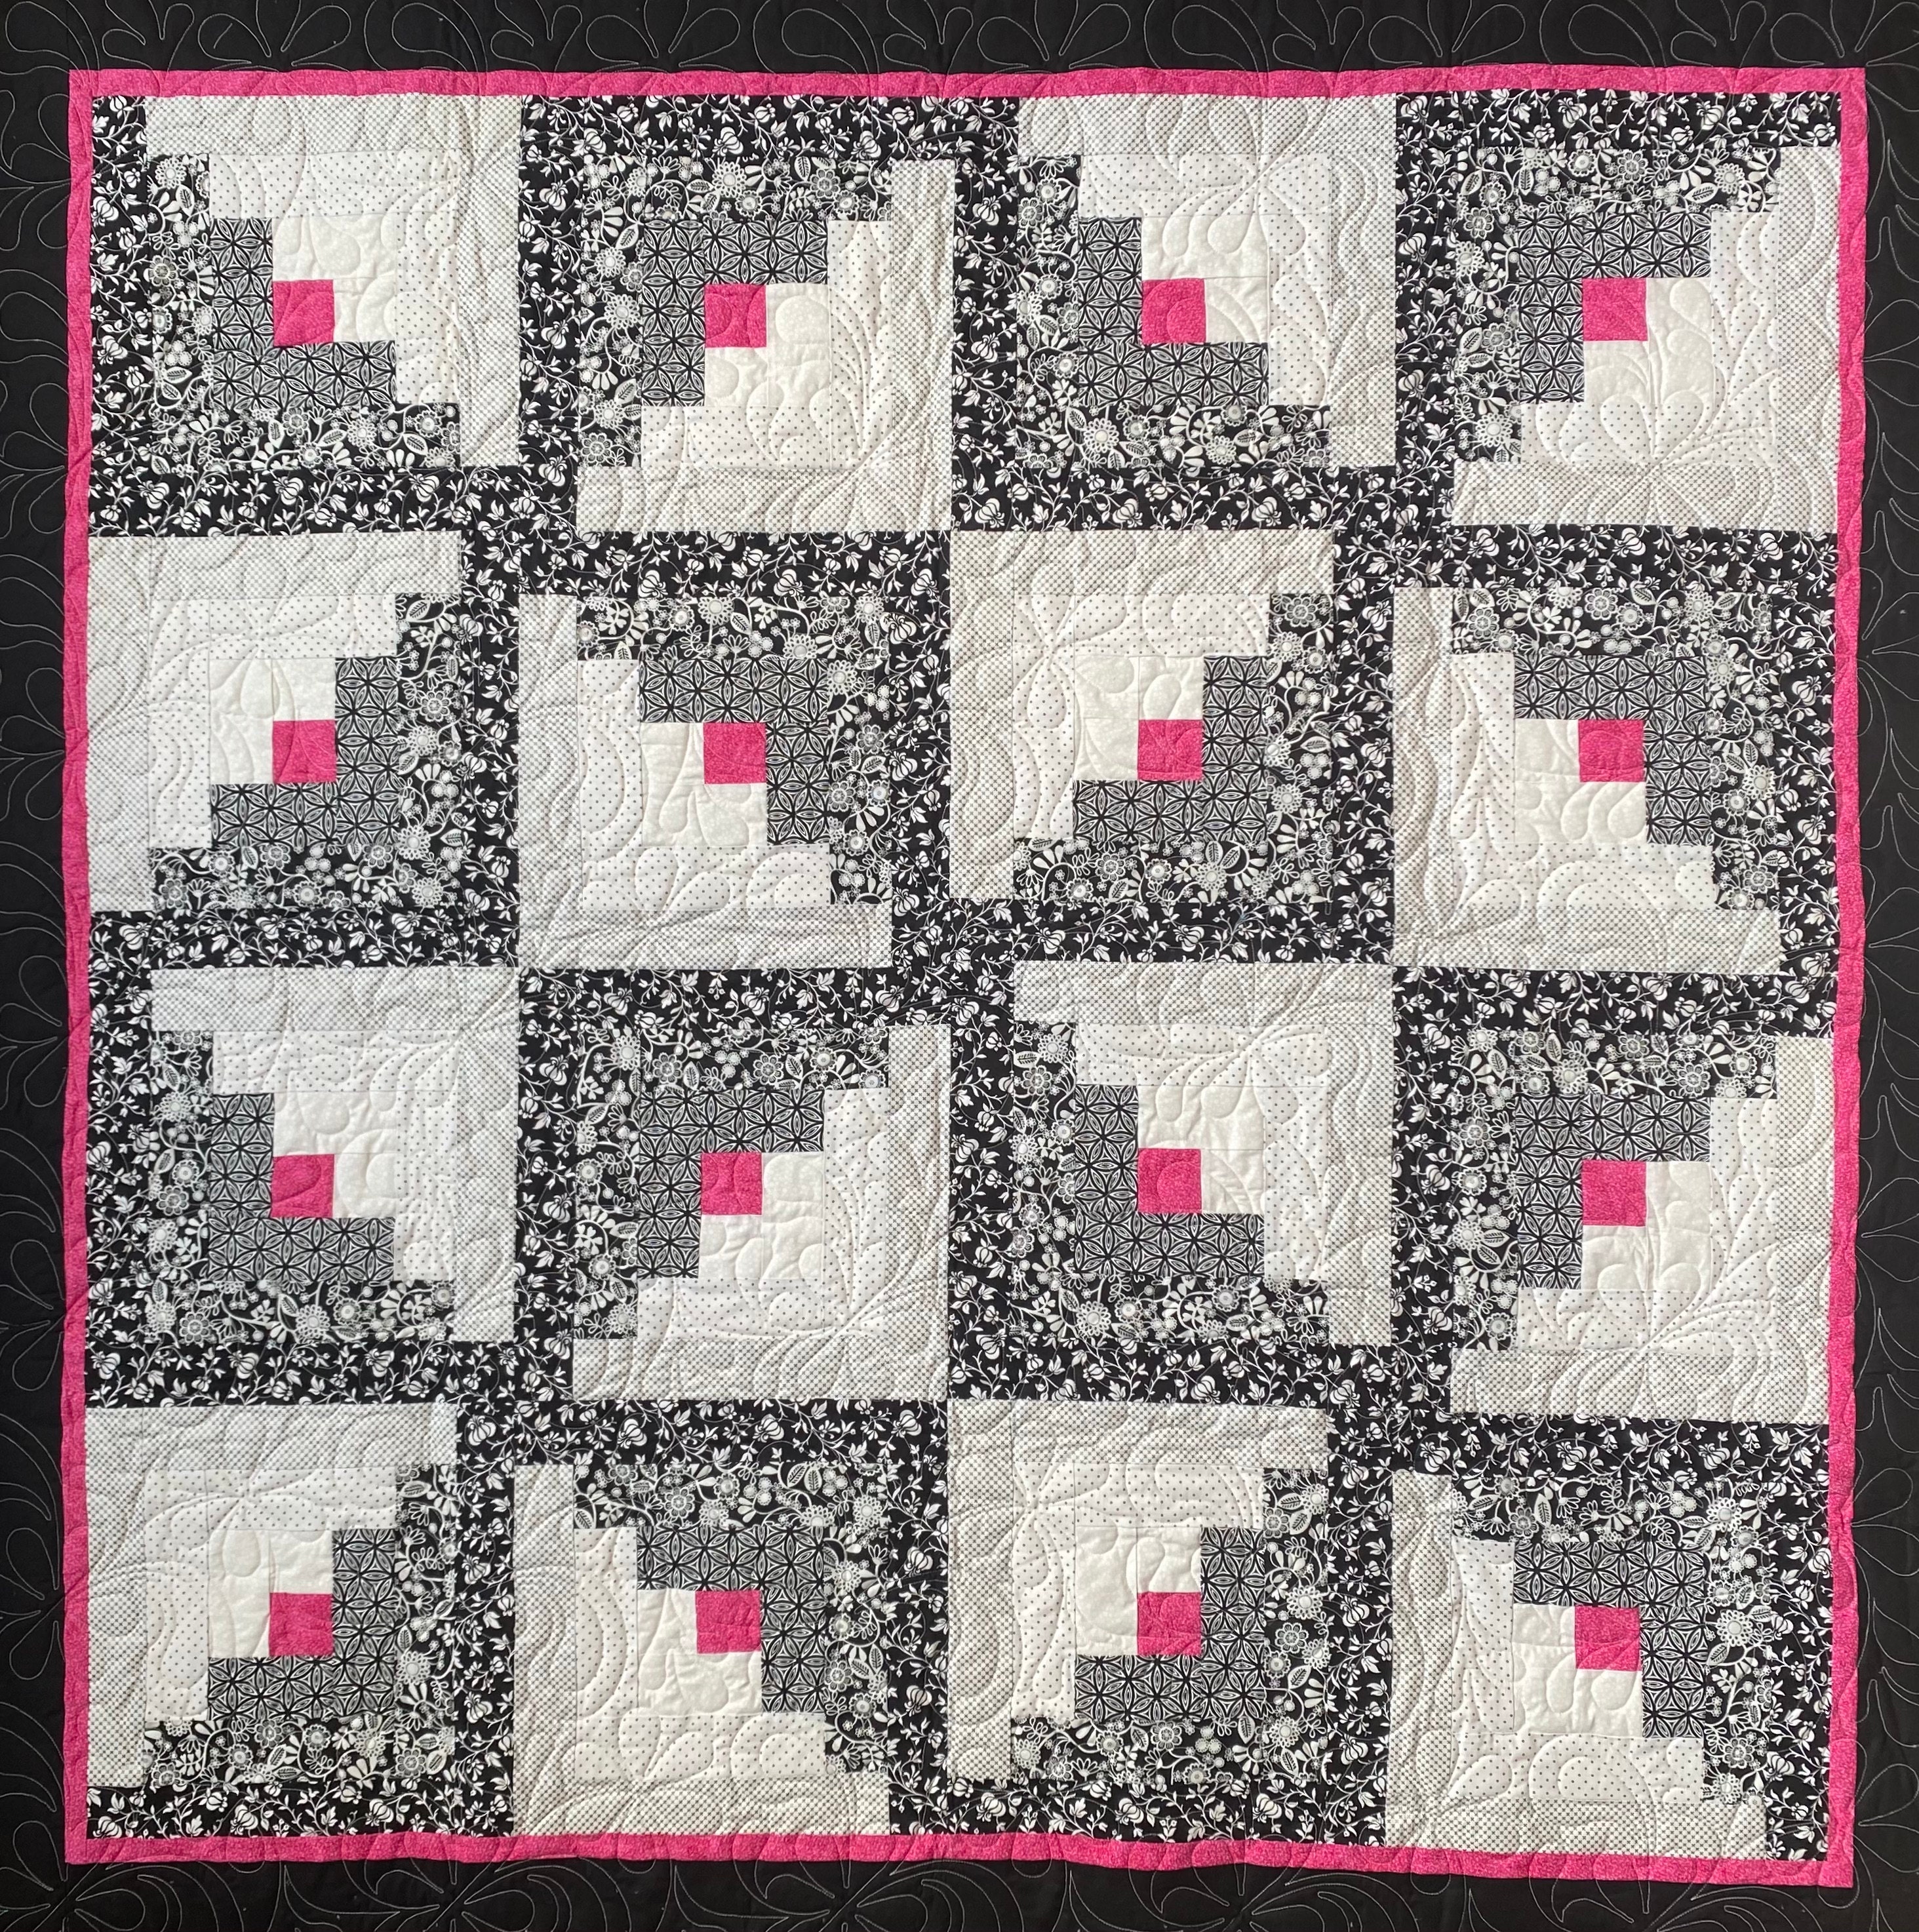 Ten Quilts for Ten Sisters